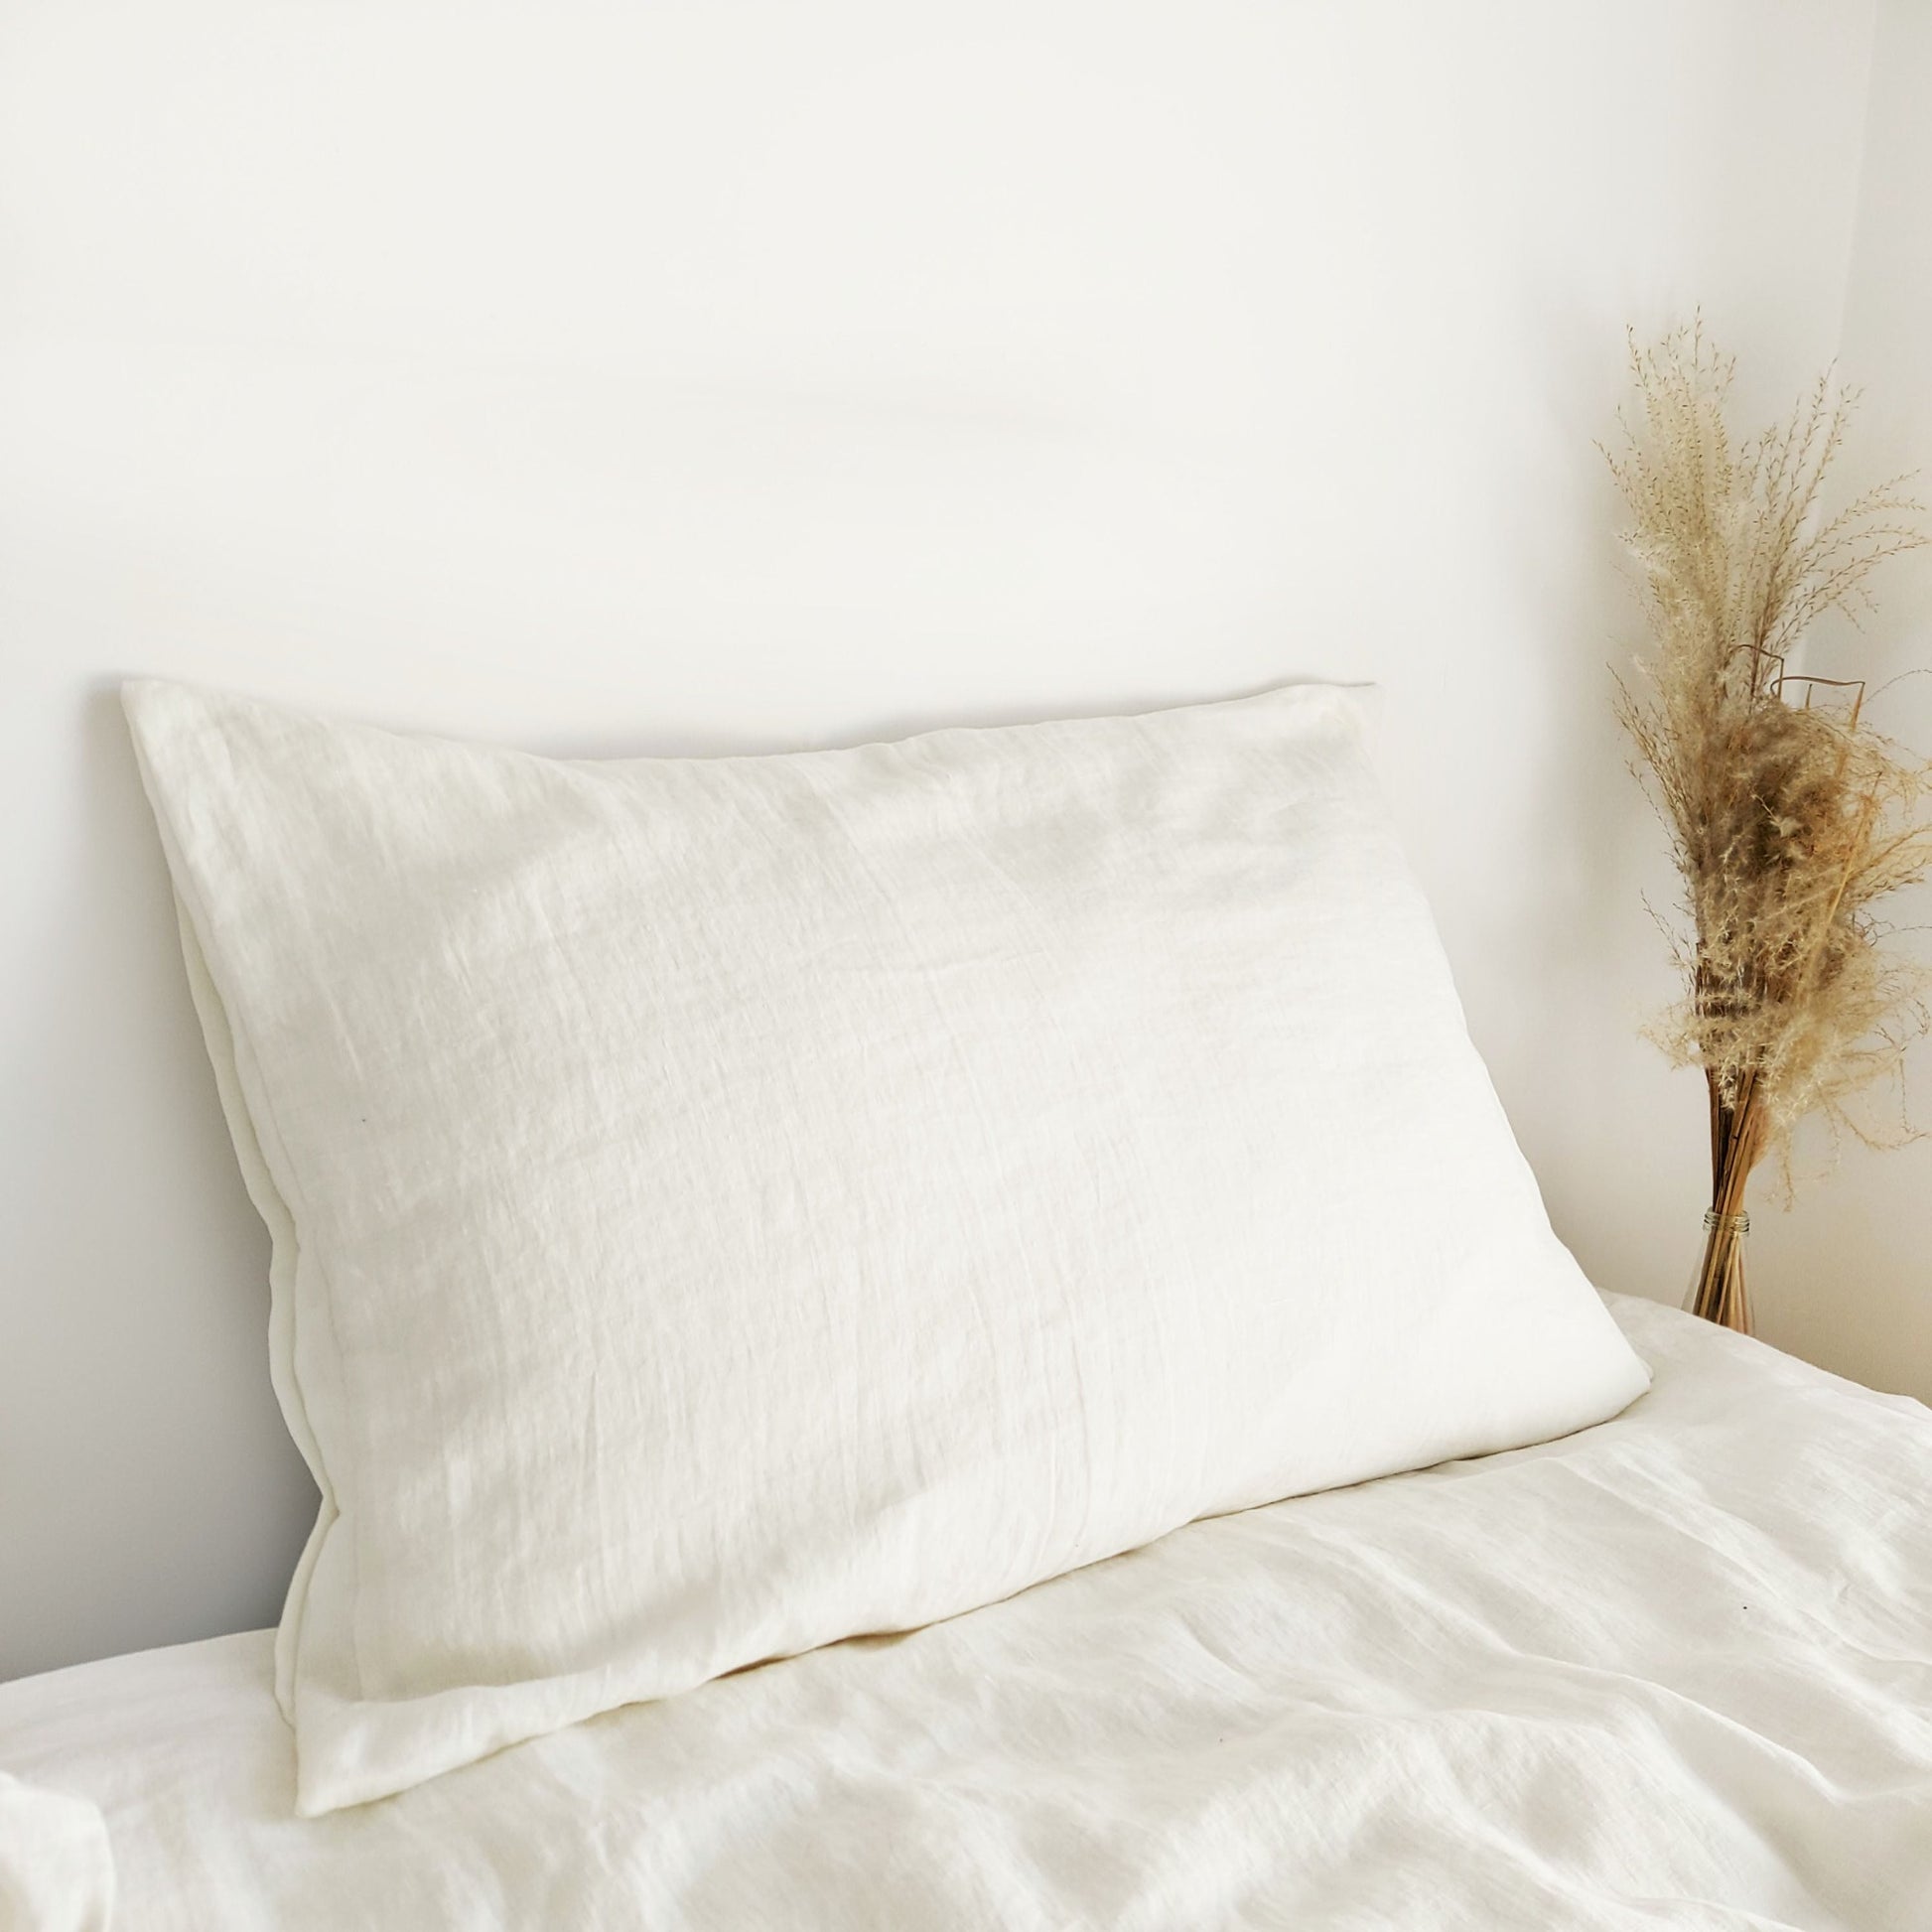 Linen pillow covers